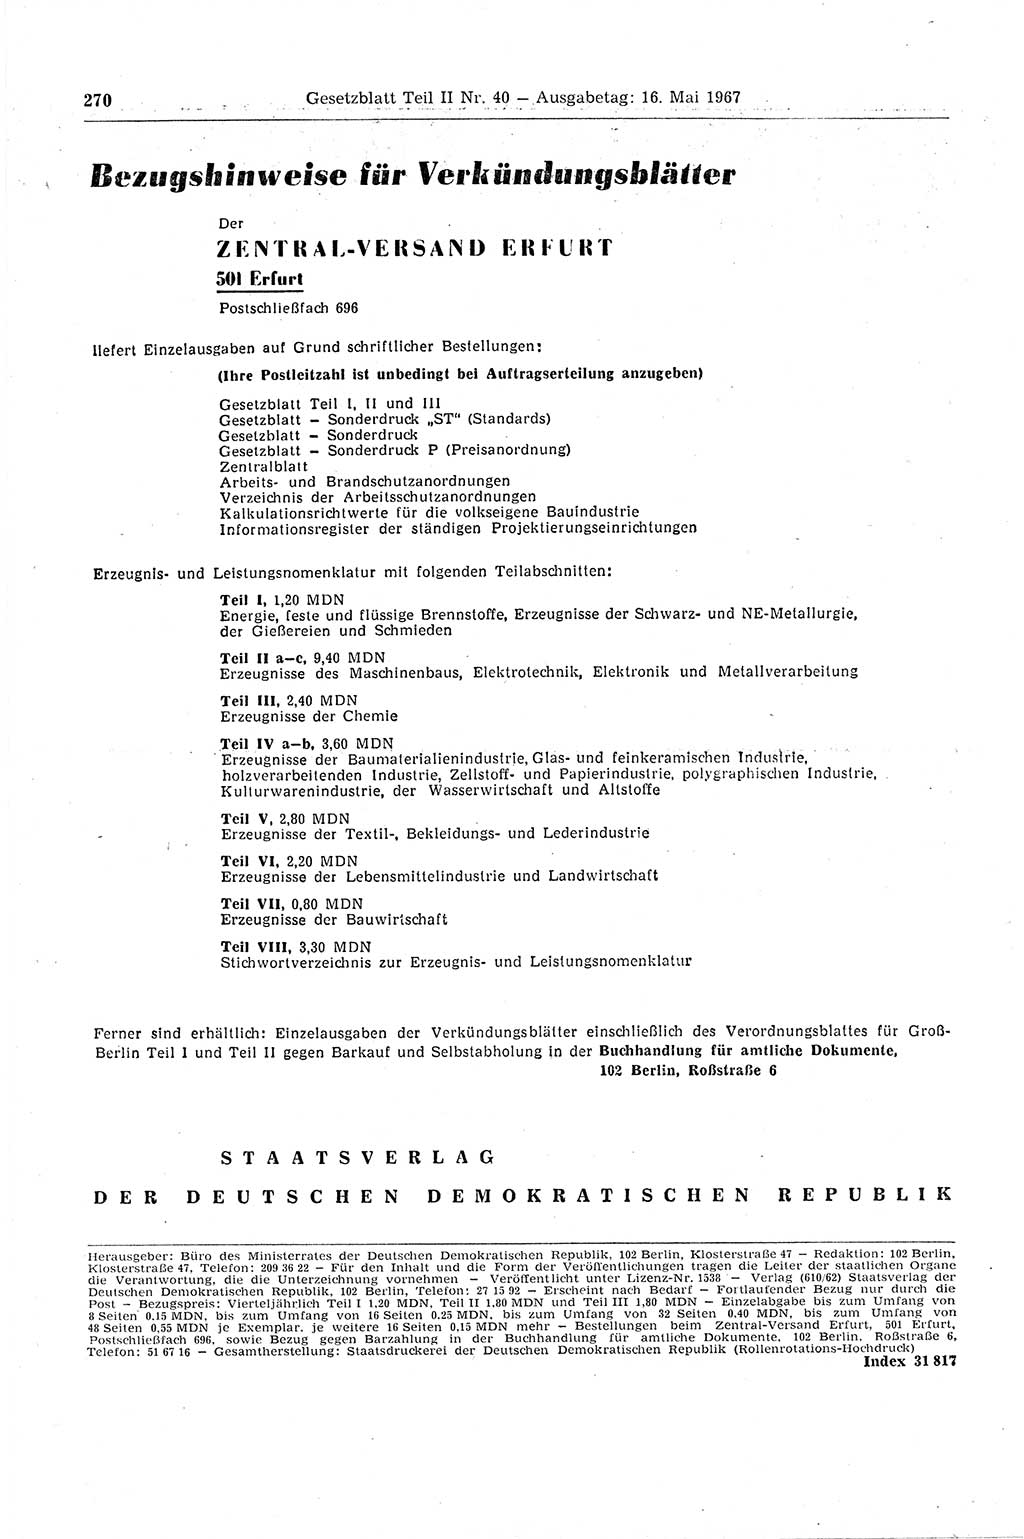 Gesetzblatt (GBl.) der Deutschen Demokratischen Republik (DDR) Teil ⅠⅠ 1967, Seite 270 (GBl. DDR ⅠⅠ 1967, S. 270)